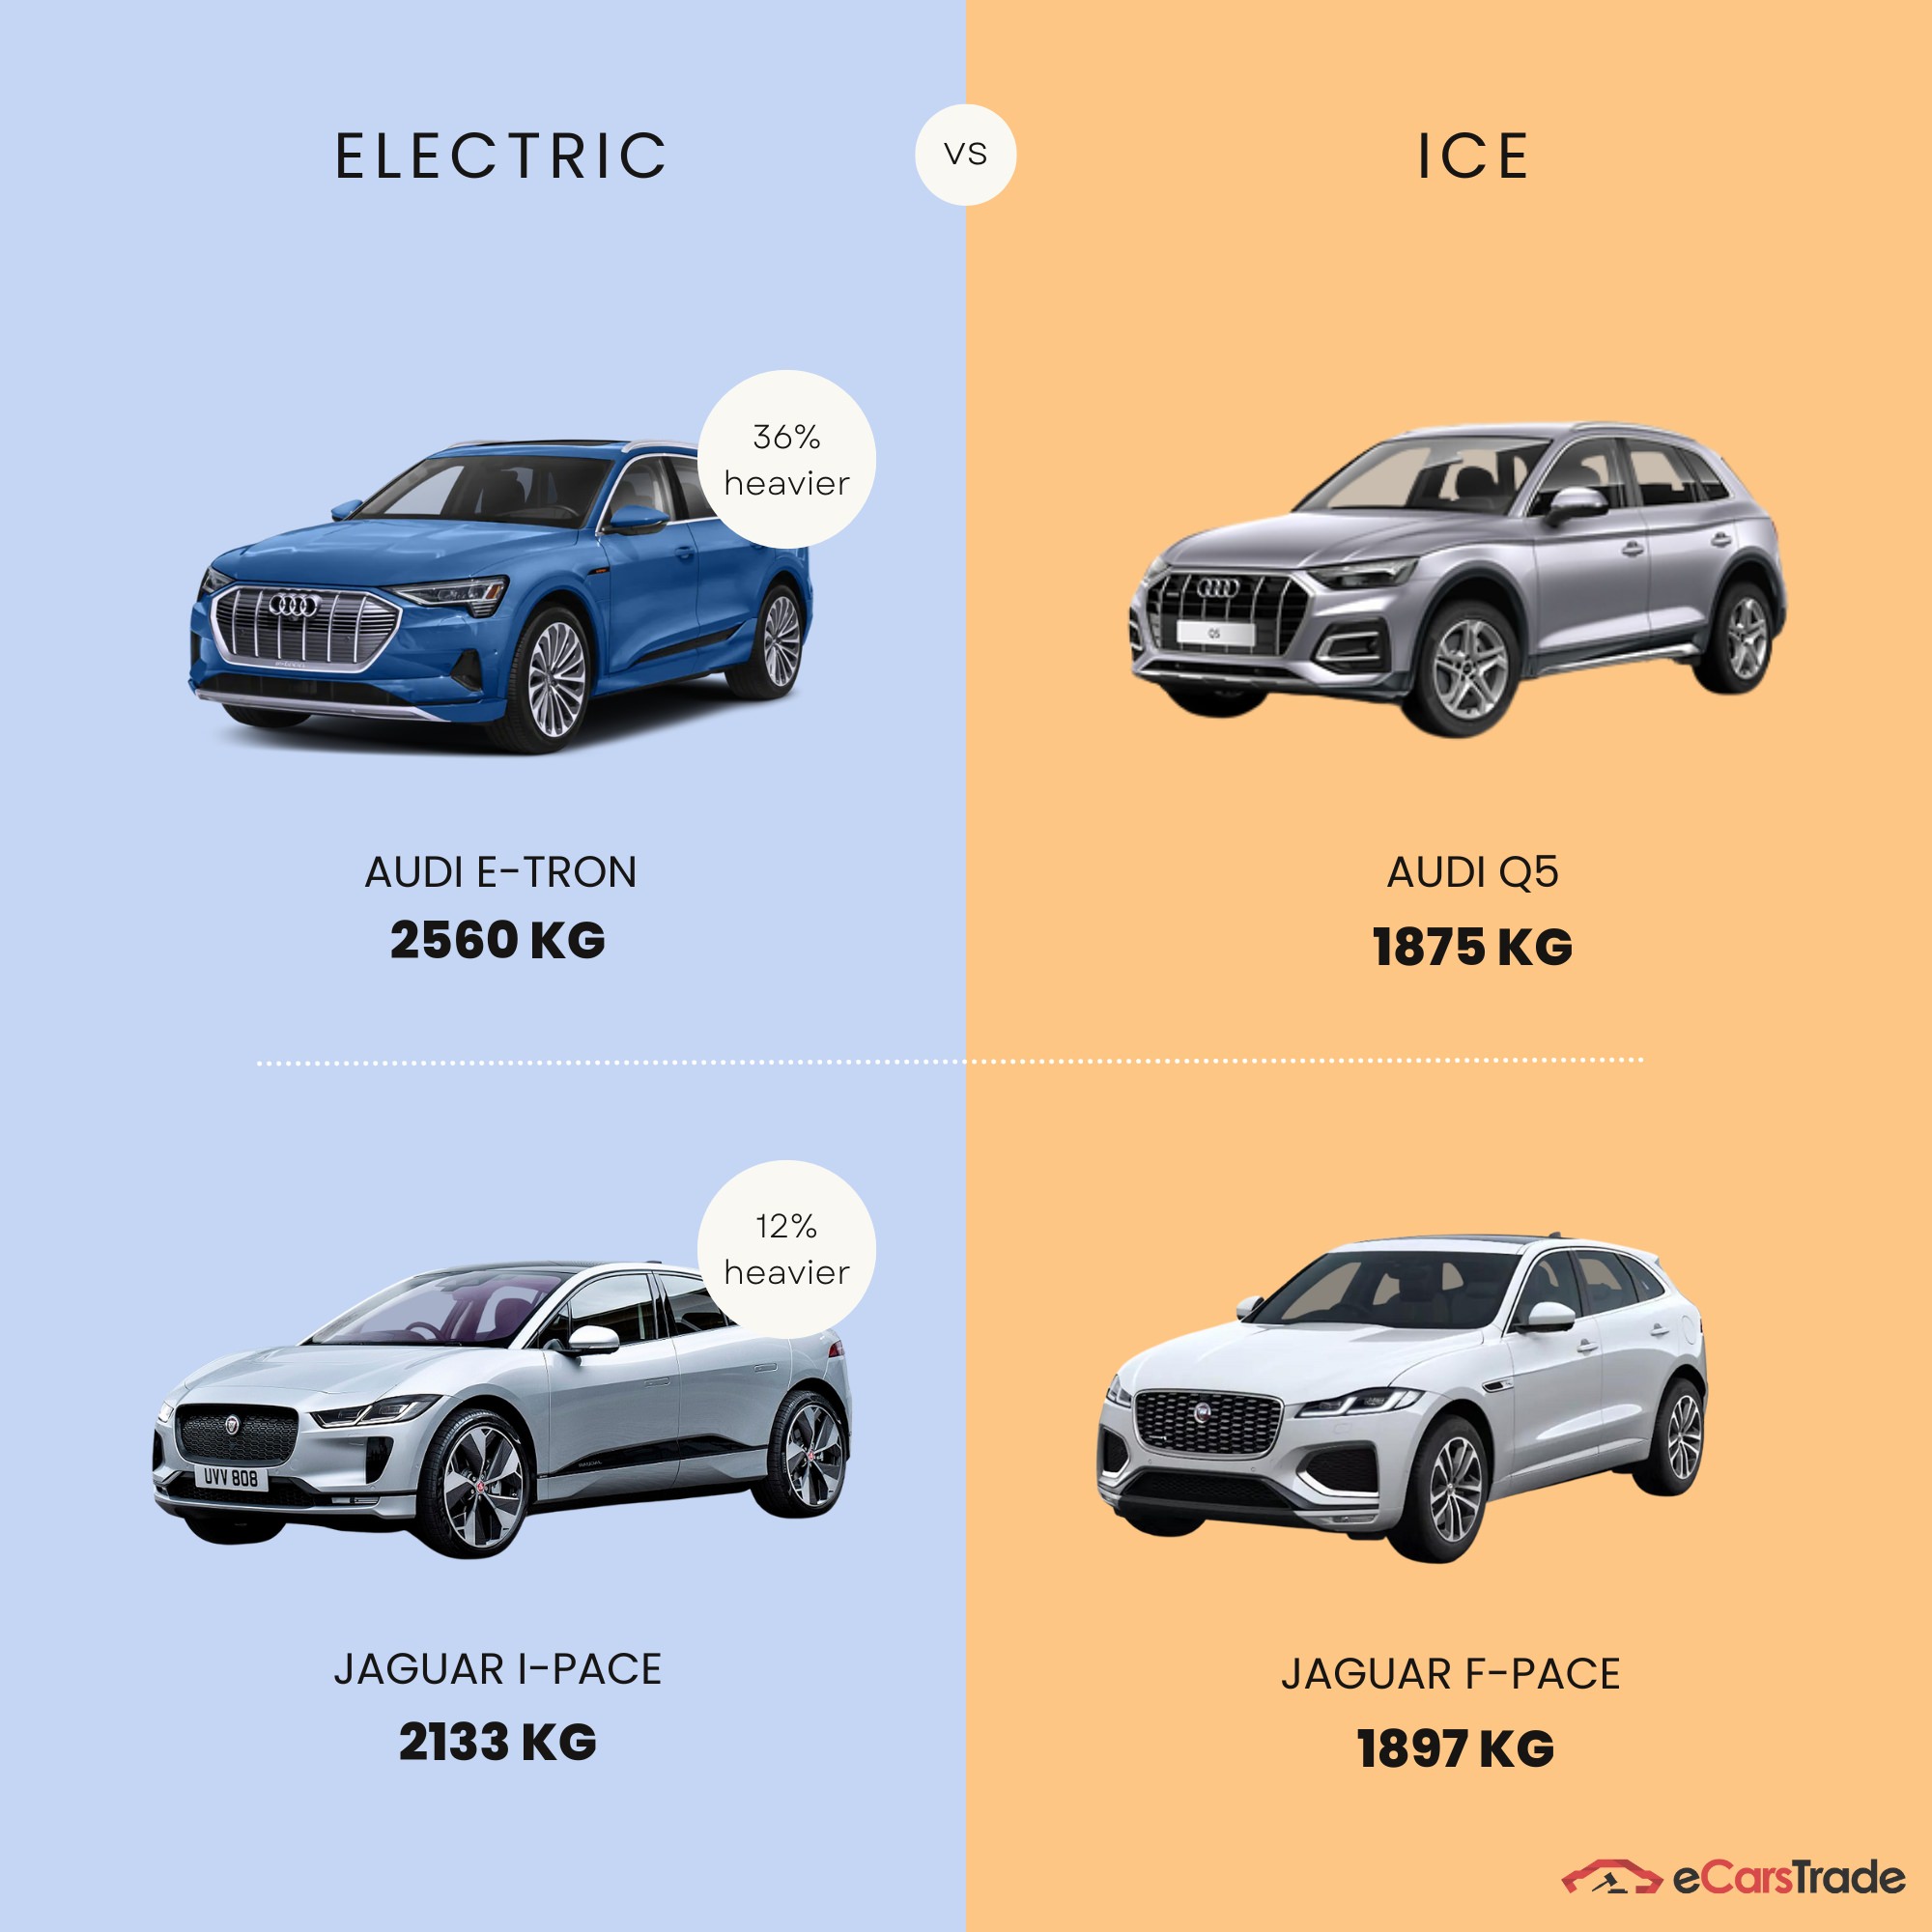 Infografik zum Gewichtsunterschied zwischen Elektro- und ICE-Fahrzeugen